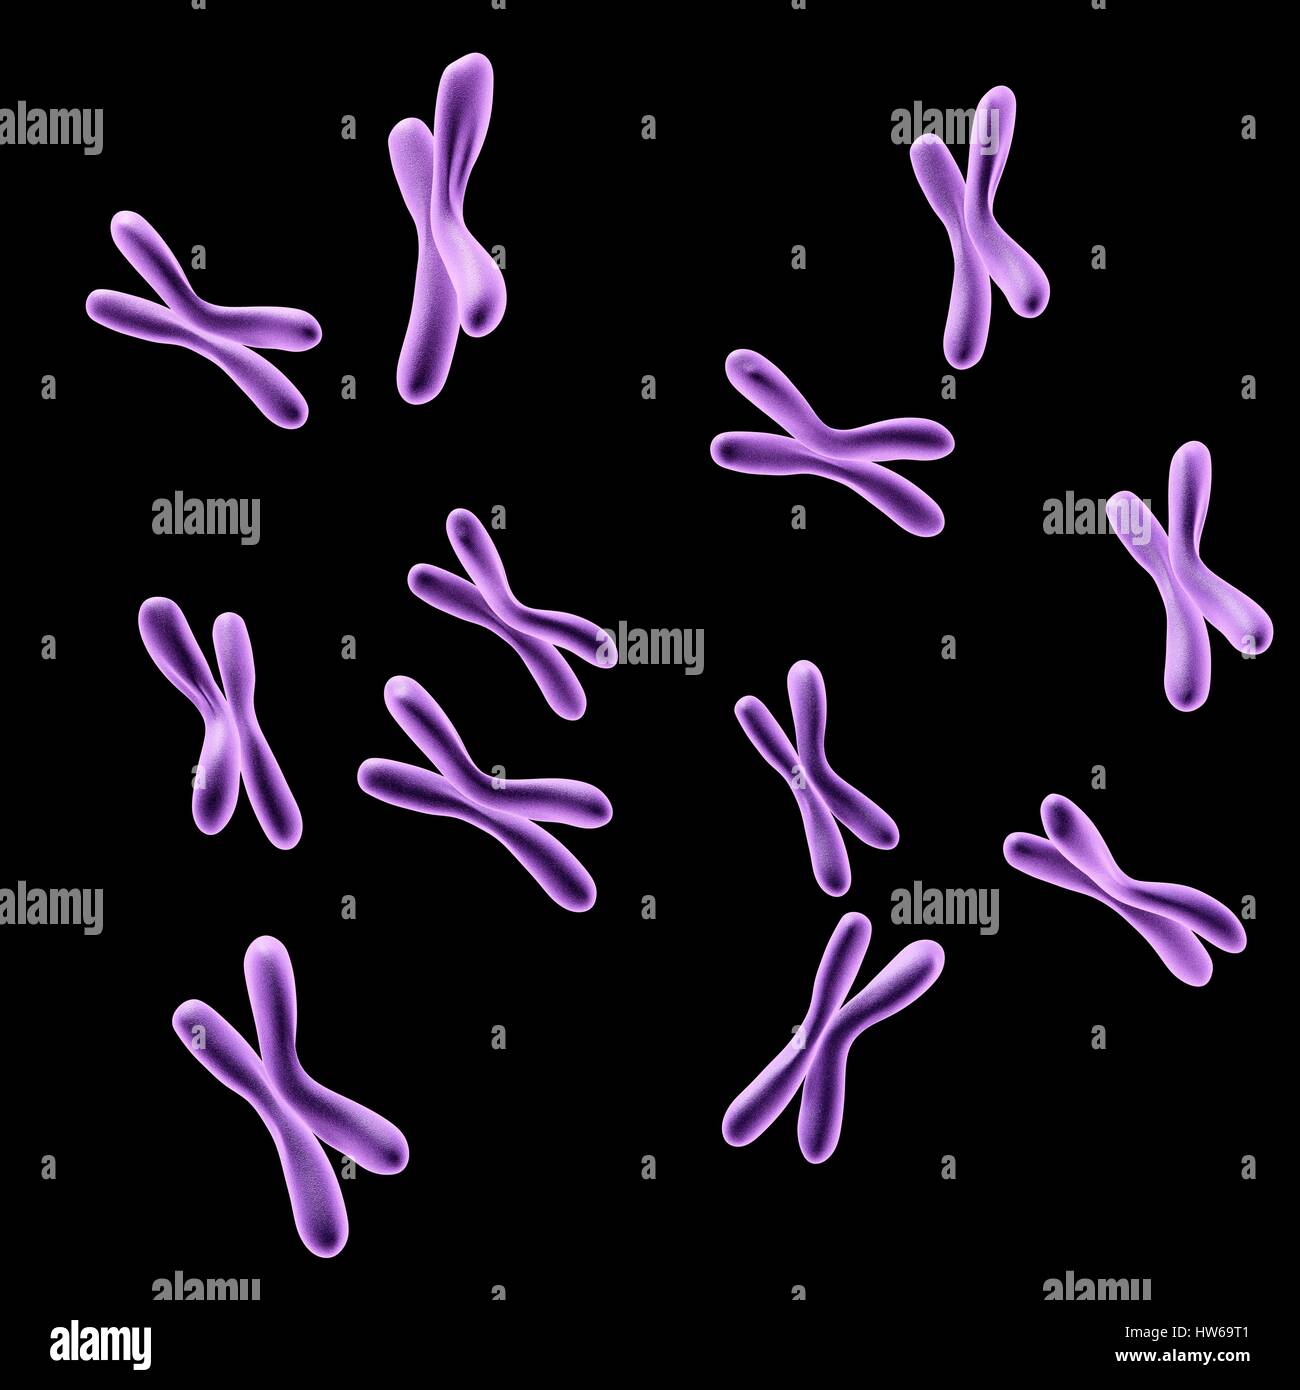 Illustration of human chromosomes. Stock Photo